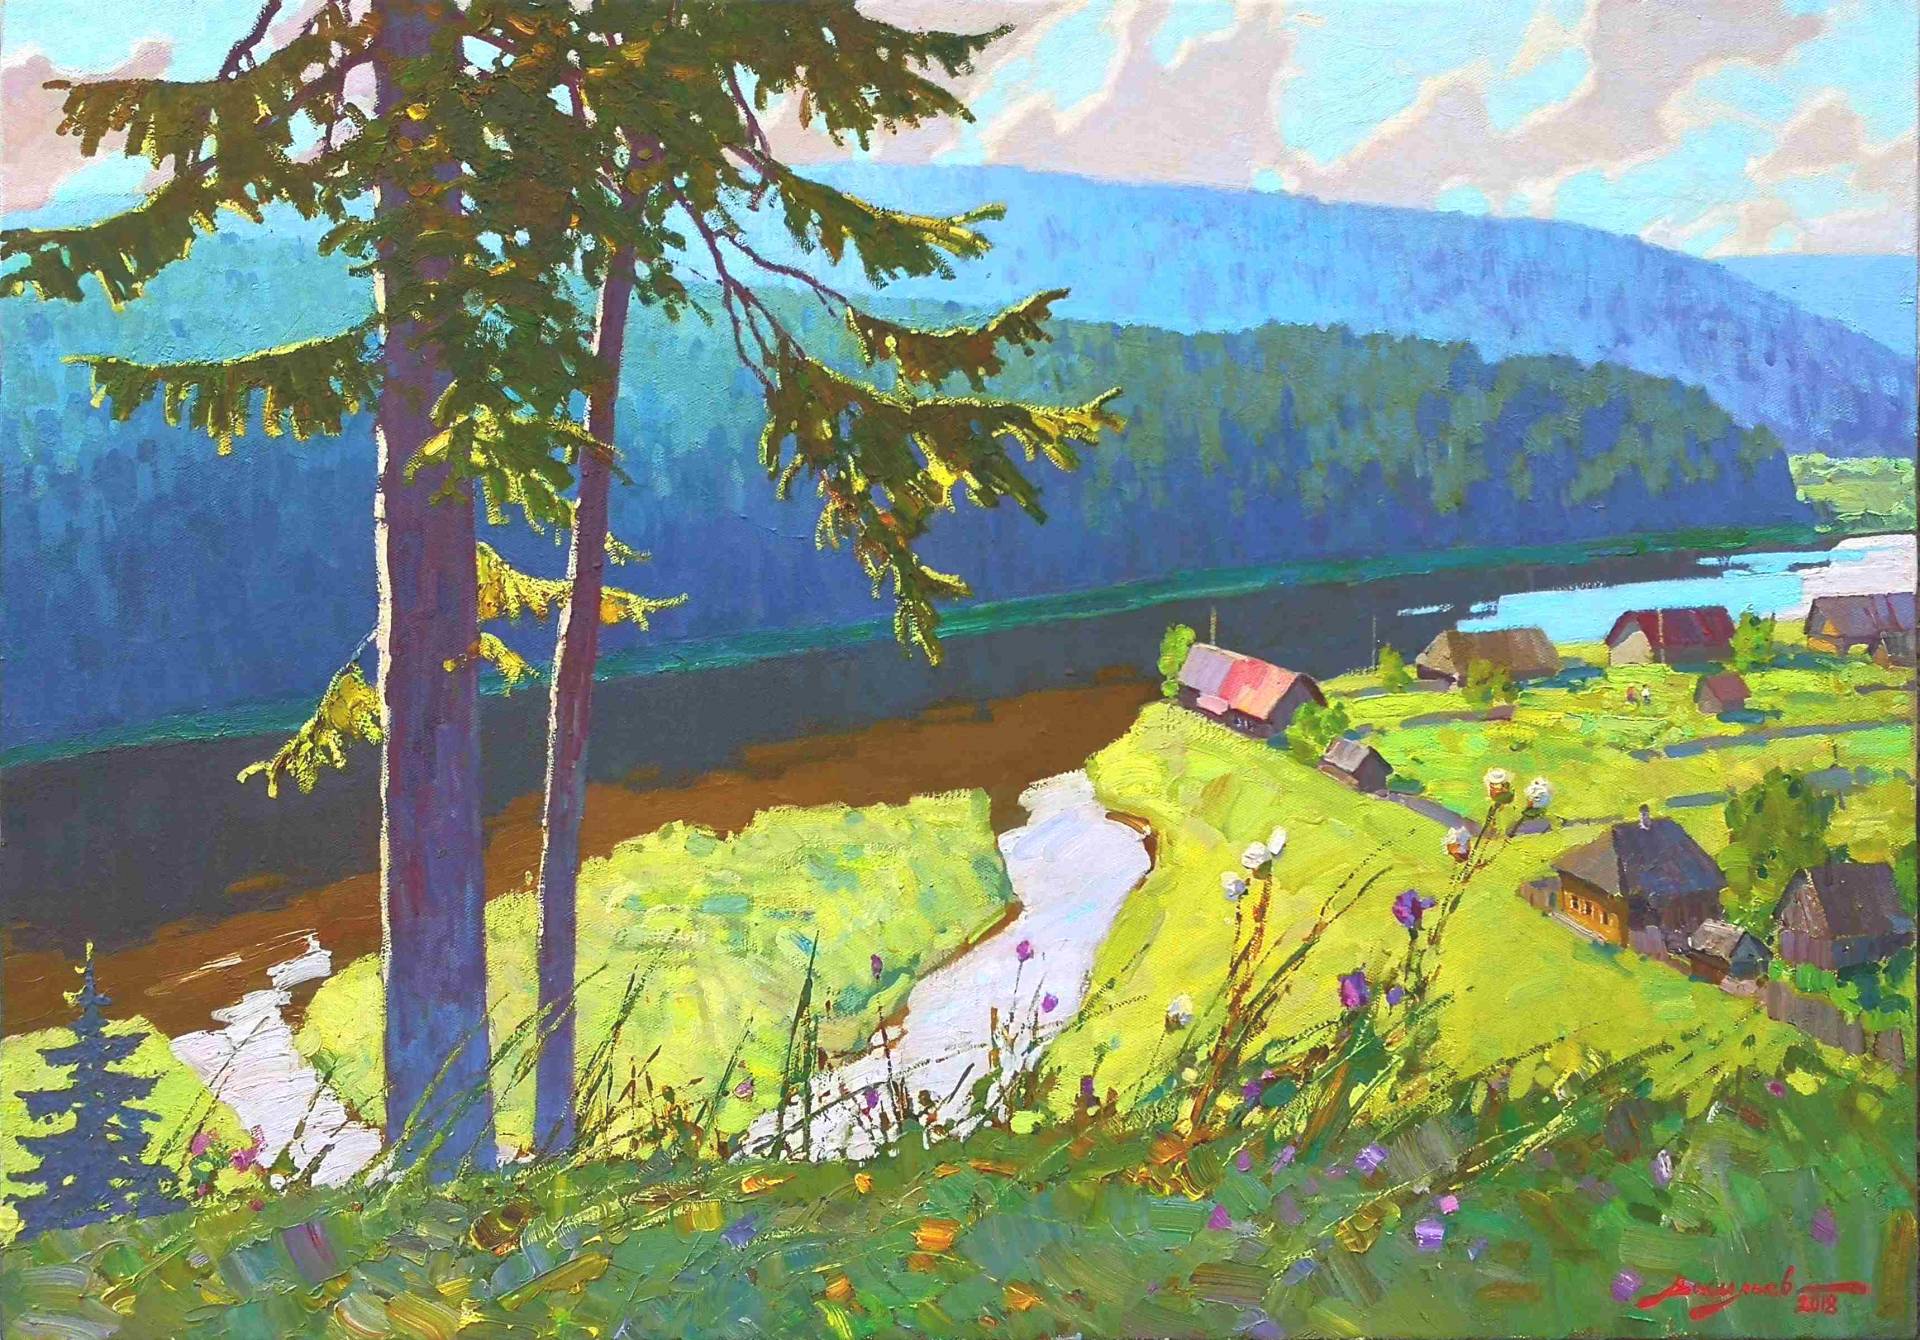 Sunny day. Chusovaya - 1, Dmitry Vasiliev, Buy the painting Oil